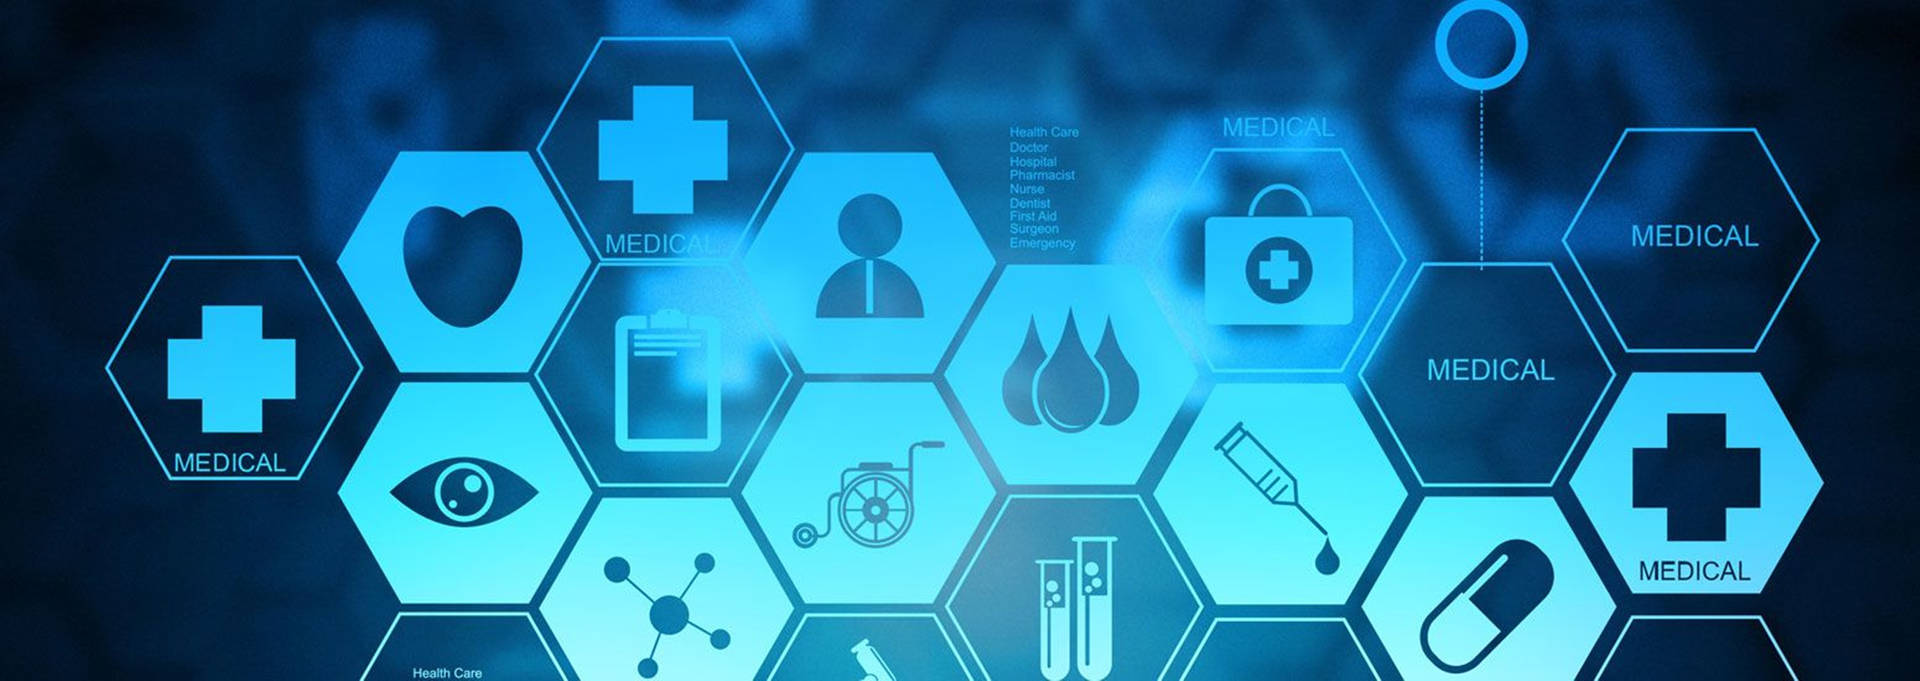 Healthcare Icons Hexagon Wallpaper